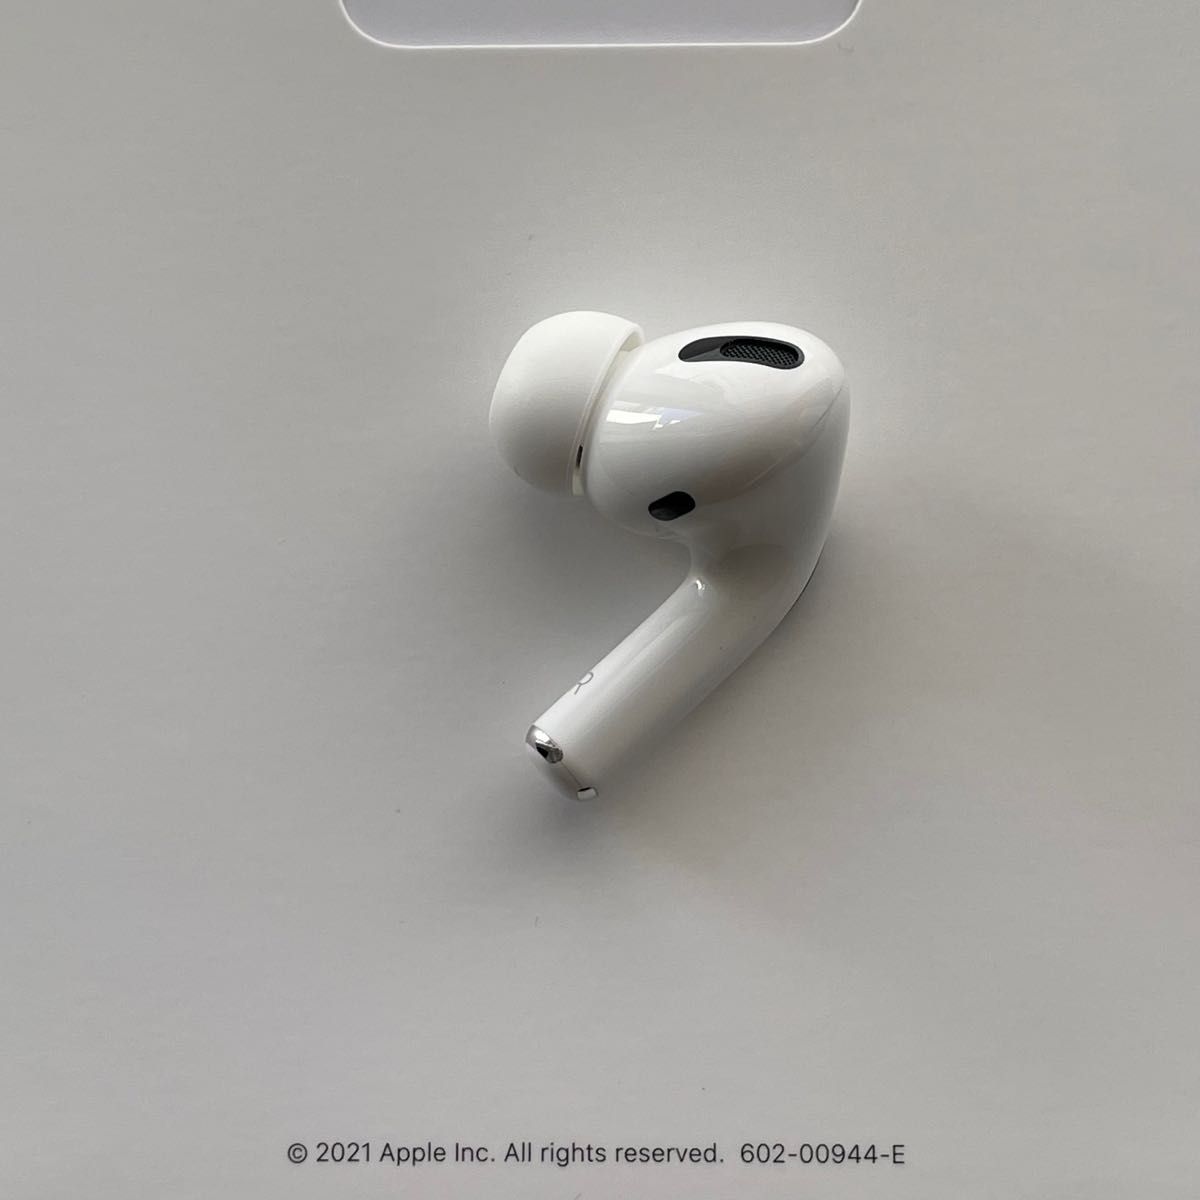 搬入設置サービス付 【Apple正規品】AirPods Pro 第二世代 左耳のみ 